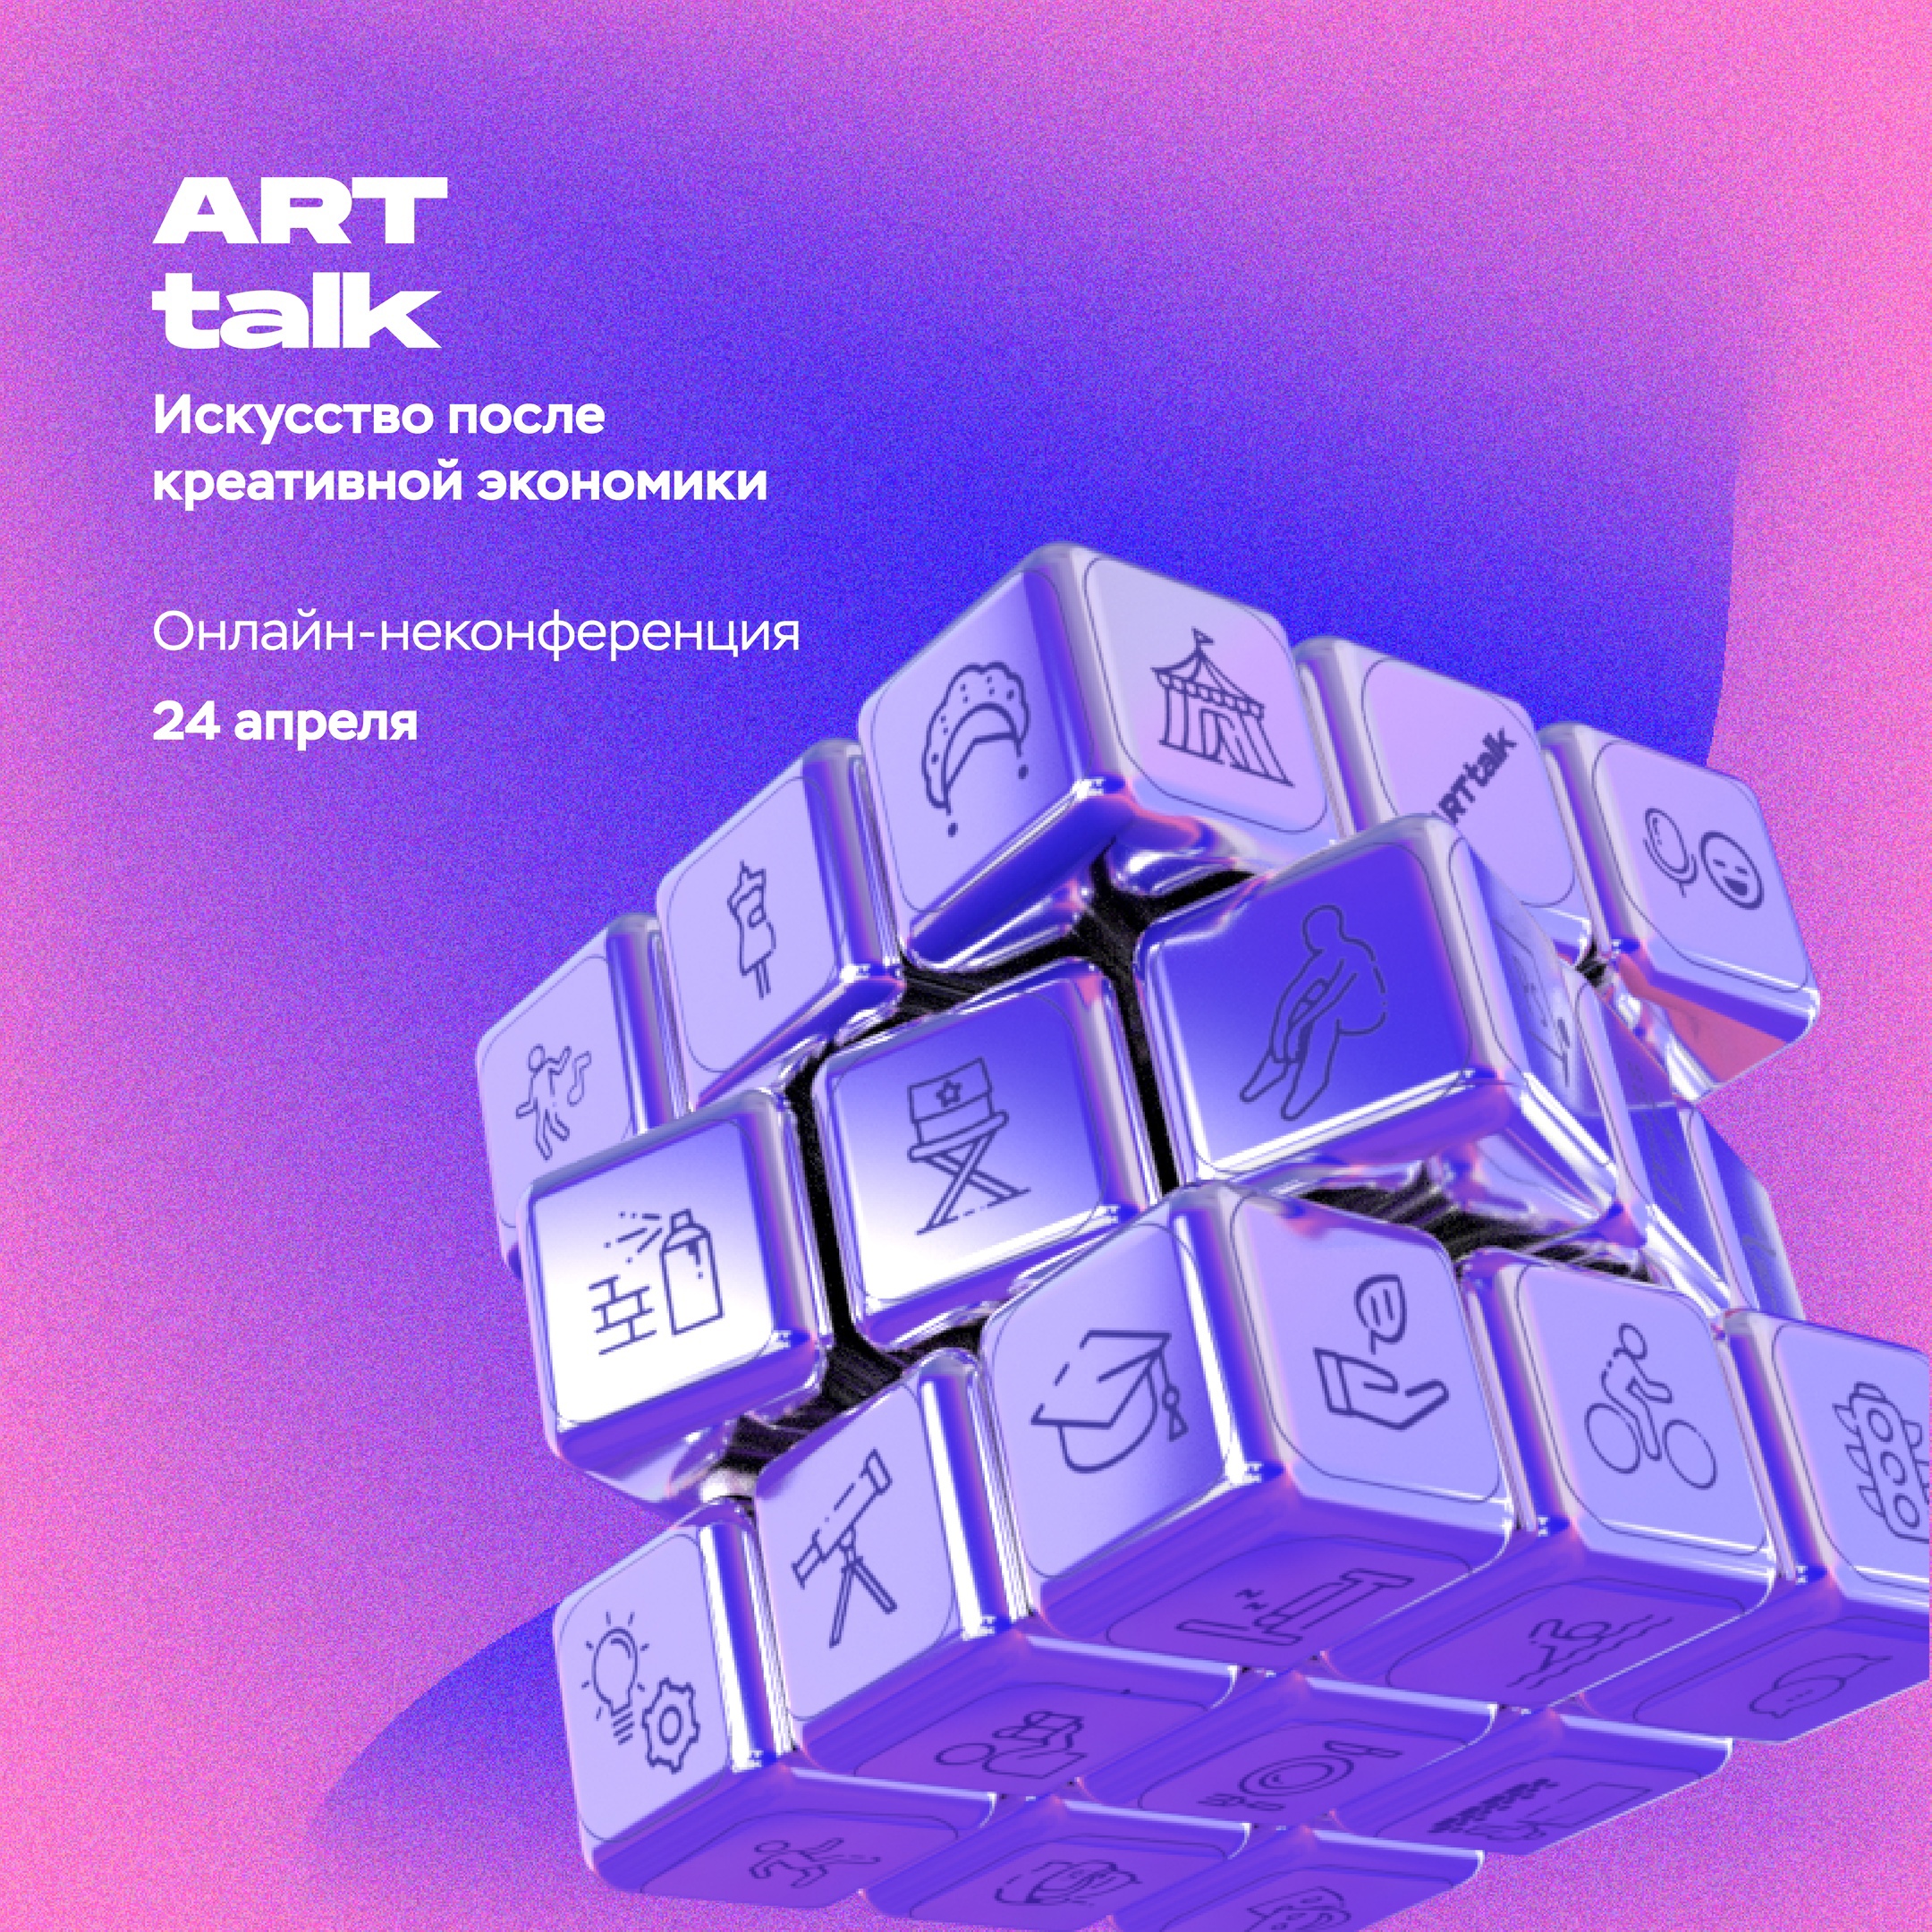 Регистрируйся на бесплатную онлайн-неконференцию «АRТtalk. Искусство после креативной экономики» 